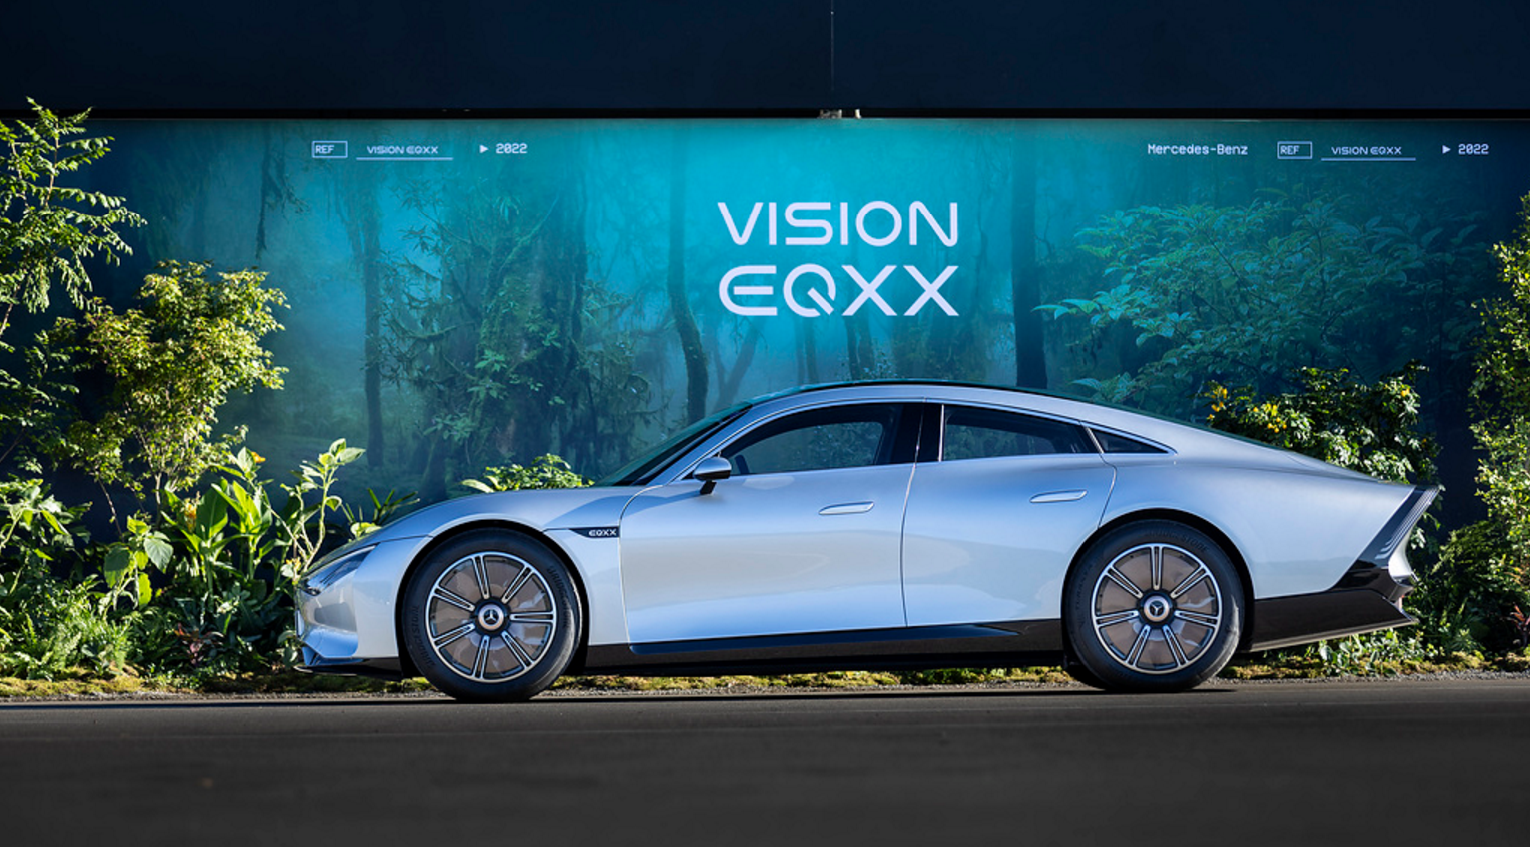 安森美的碳化硅技术赋能纯电动汽车VISION EQXX单次充电续航更远